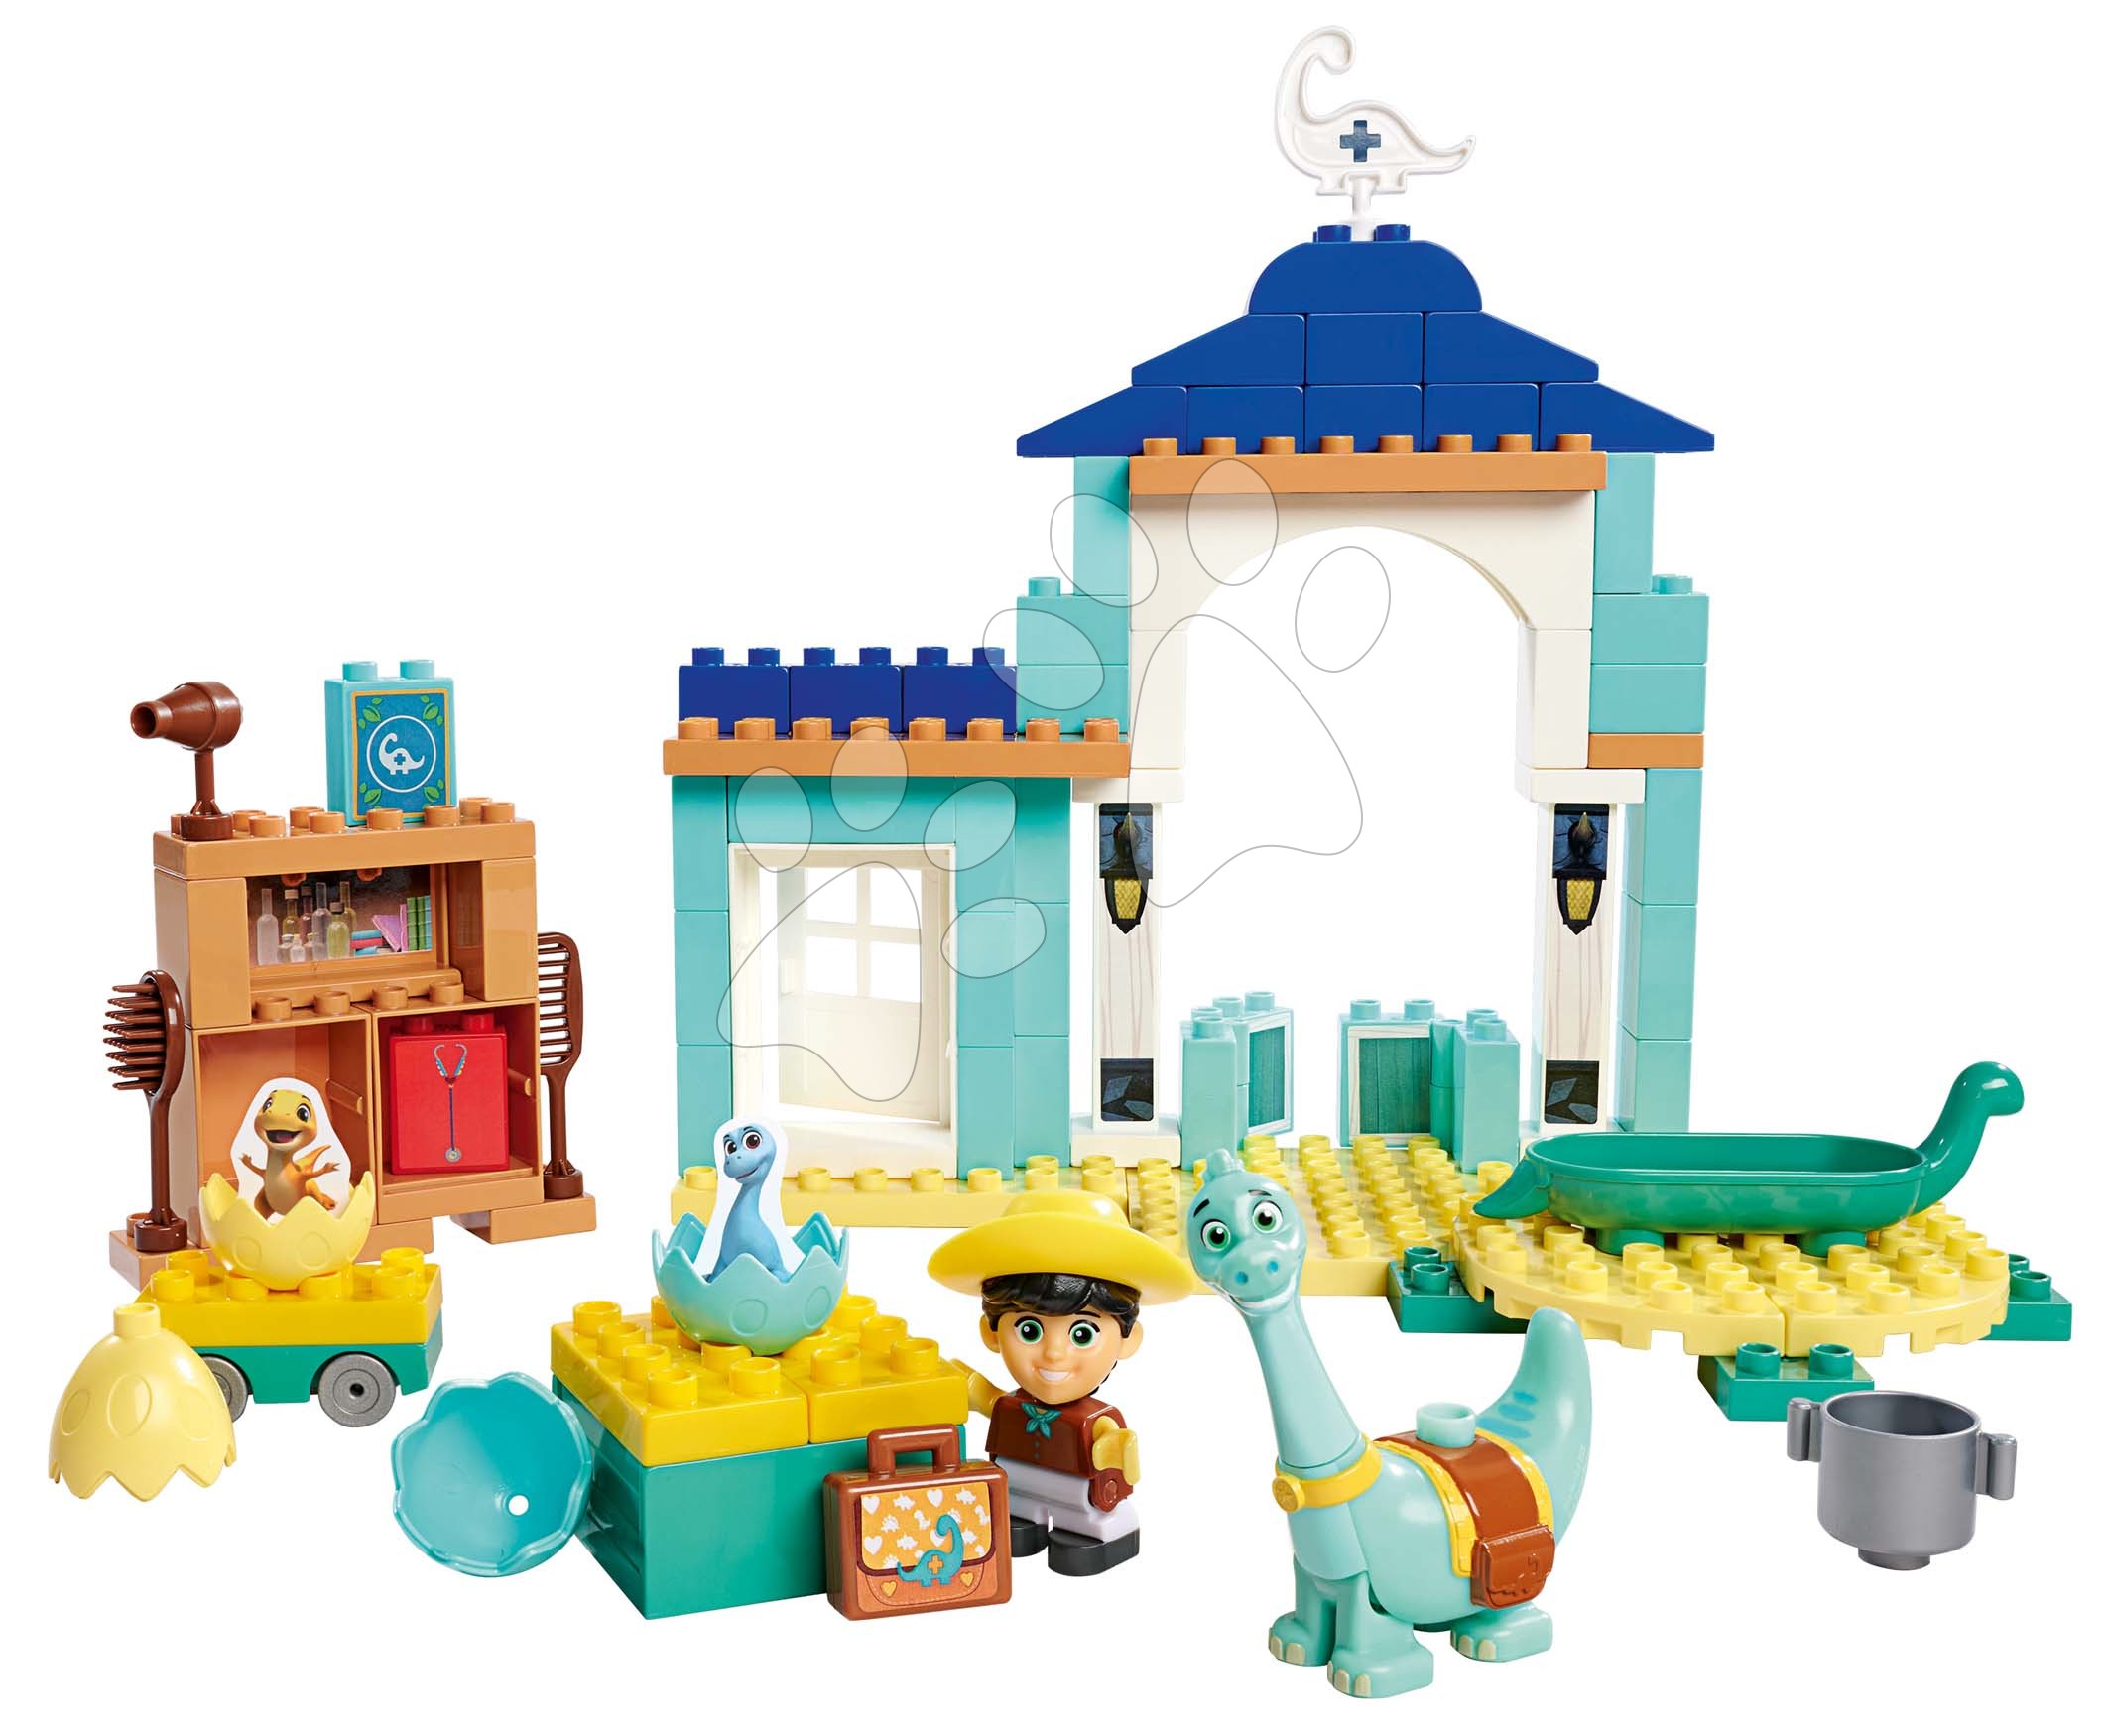 Kocke BIG-Bloxx kot lego - Kocke Dino Ranch Hatchery PlayBig Bloxx BIG valilnica s kopalnico in 2 figuricama 86 delov od 1,5-5 leta